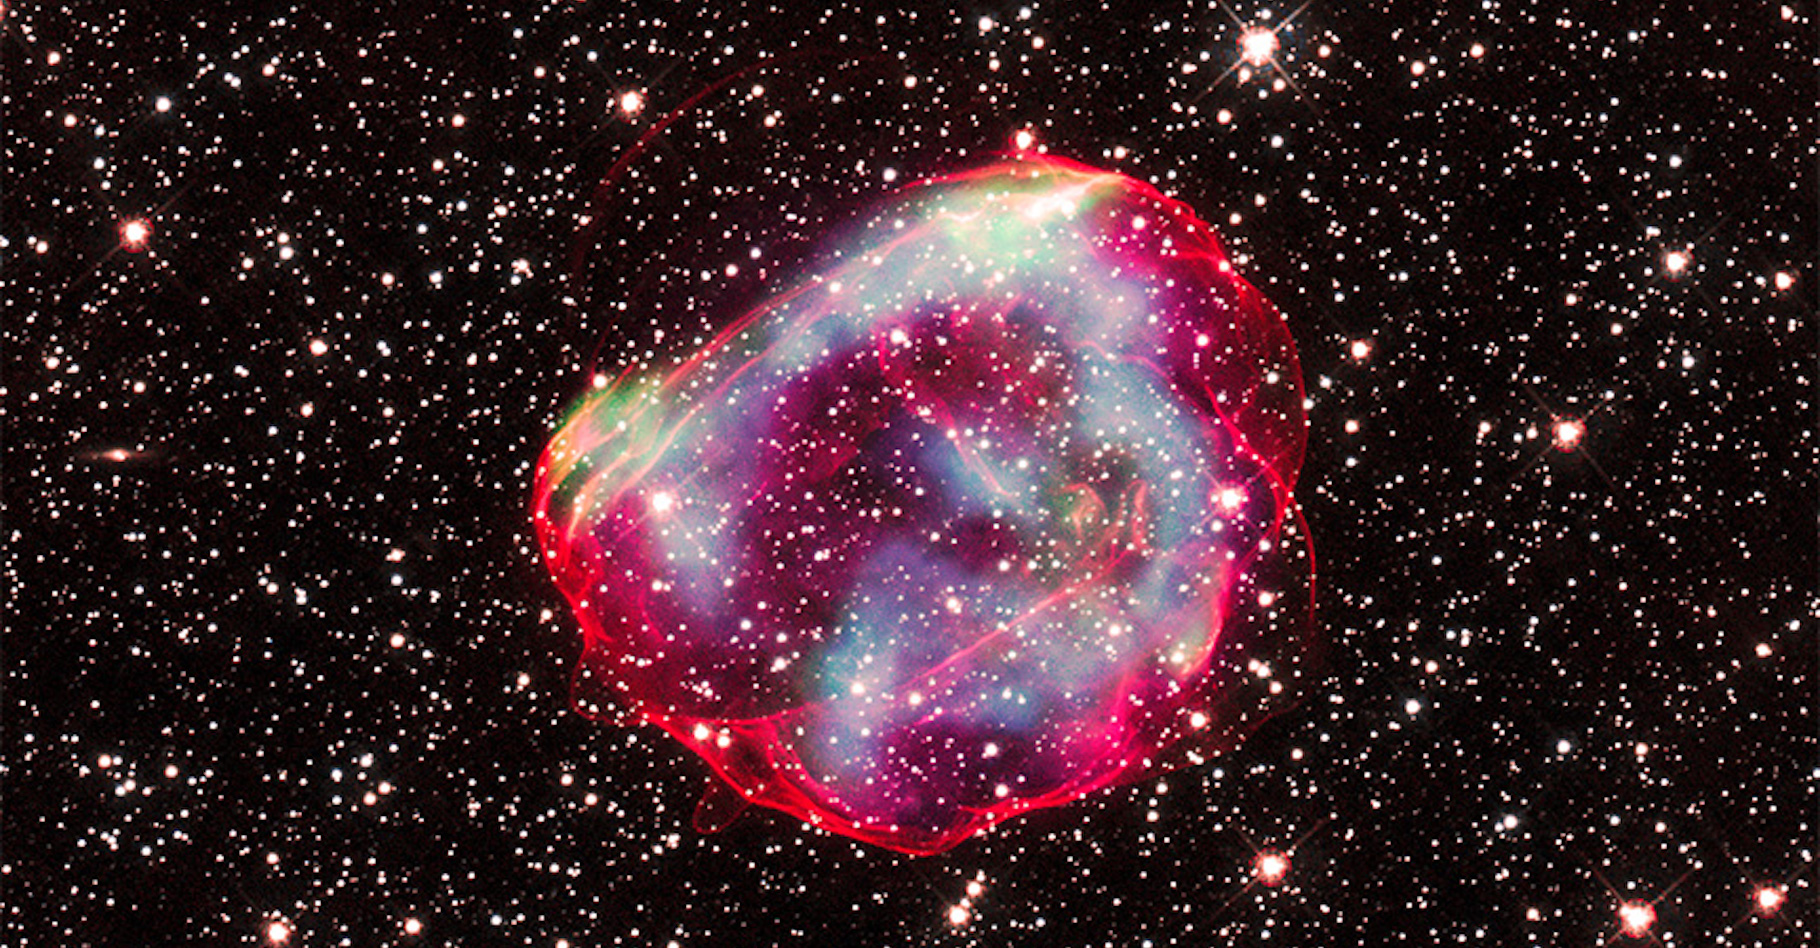 Ces traînées de gaz sont celles laissées par la supernova SNR 0519, dans la galaxie du Grand Nuage de Magellan, voisine de la nôtre. On y devine les coquilles rouges qui restent de l’étoile naine blanche qui lui a donné naissance. Selon les chercheurs, sa lumière est arrivée jusqu’à notre Terre il y a environ 600 ans. © X-ray : Nasa, CXC, GSFC, B. J. Williams et al. ; Optical : Nasa/ESA/STScI